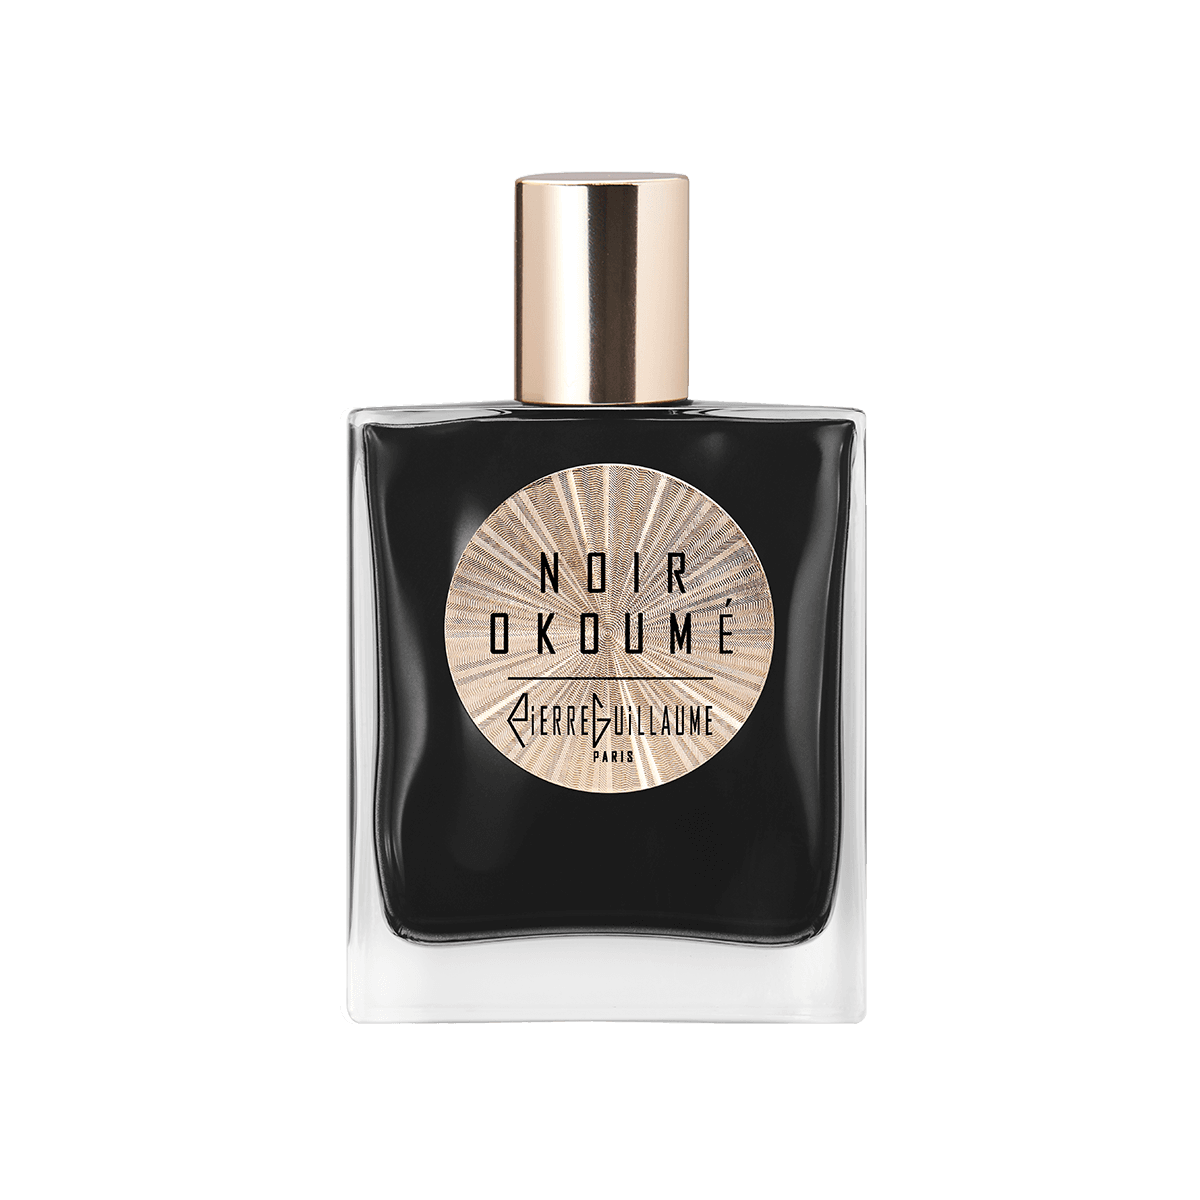 Pierre Guillaume Confidentiel - Noir Okoume 50 ml | Perfume Lounge